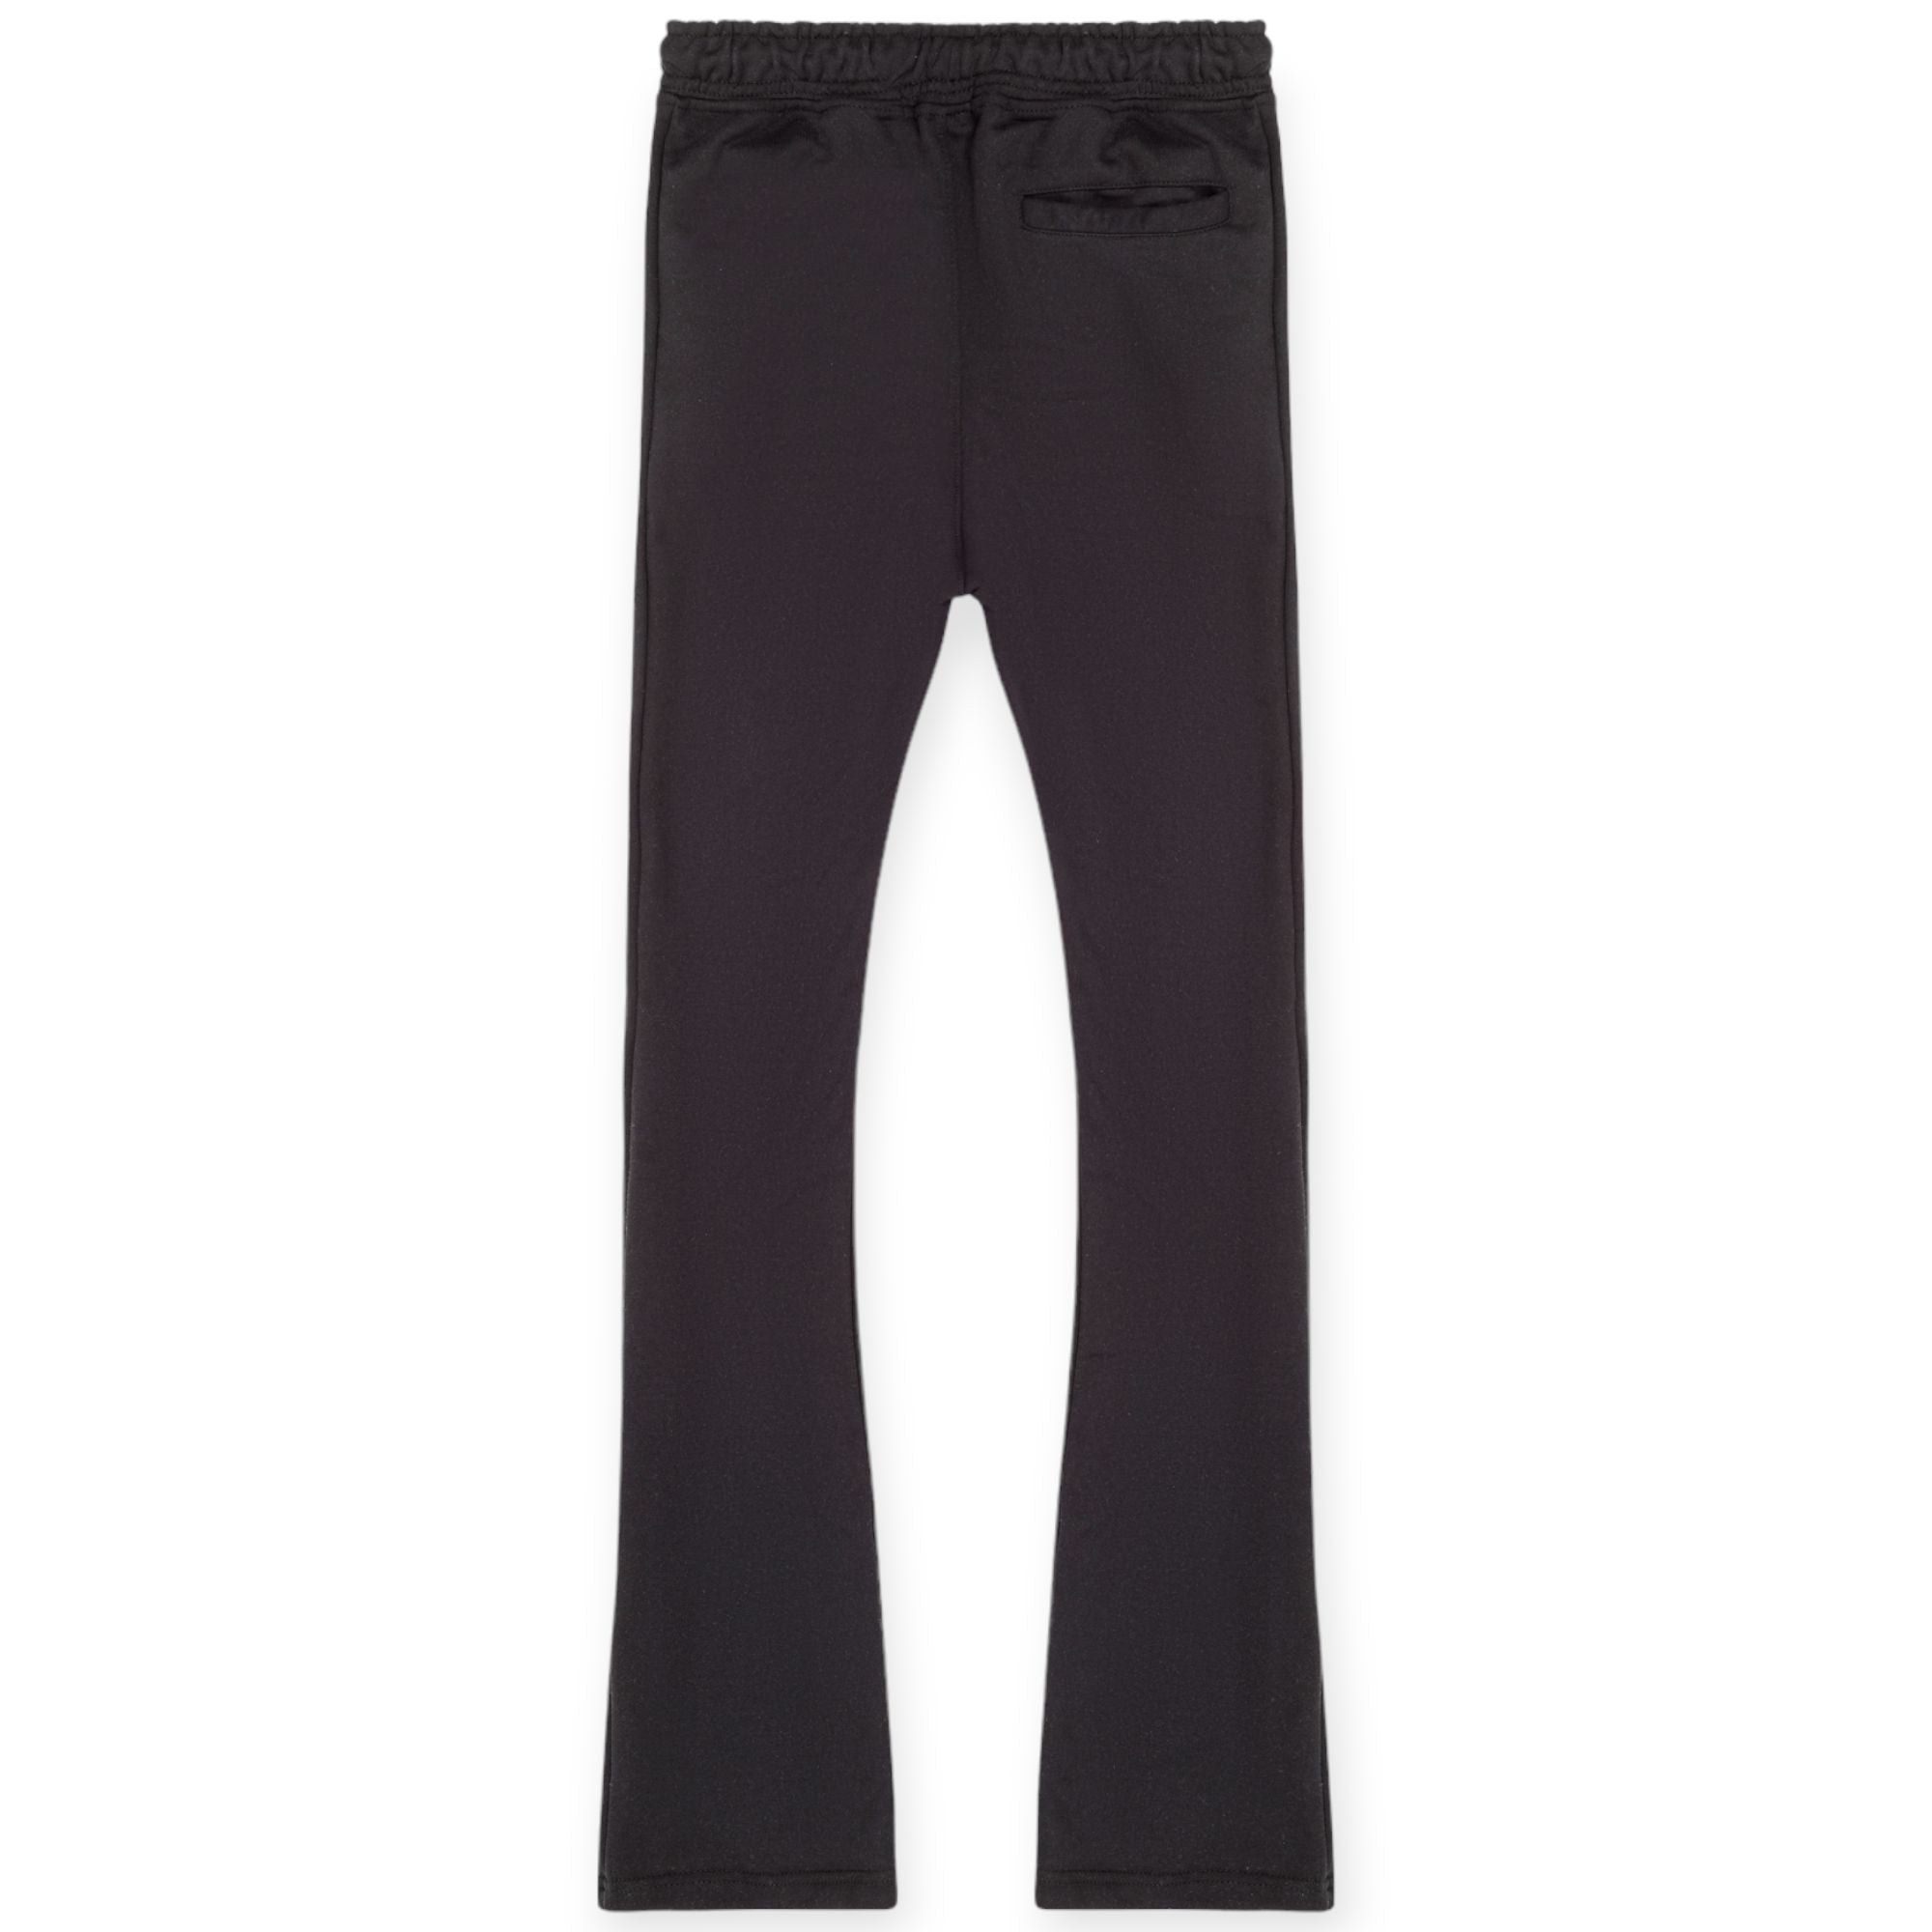 Nexus Clothing Men Basic Flare Stacked Sweatpants French Terry Joggers (Black)-Nexus Clothing